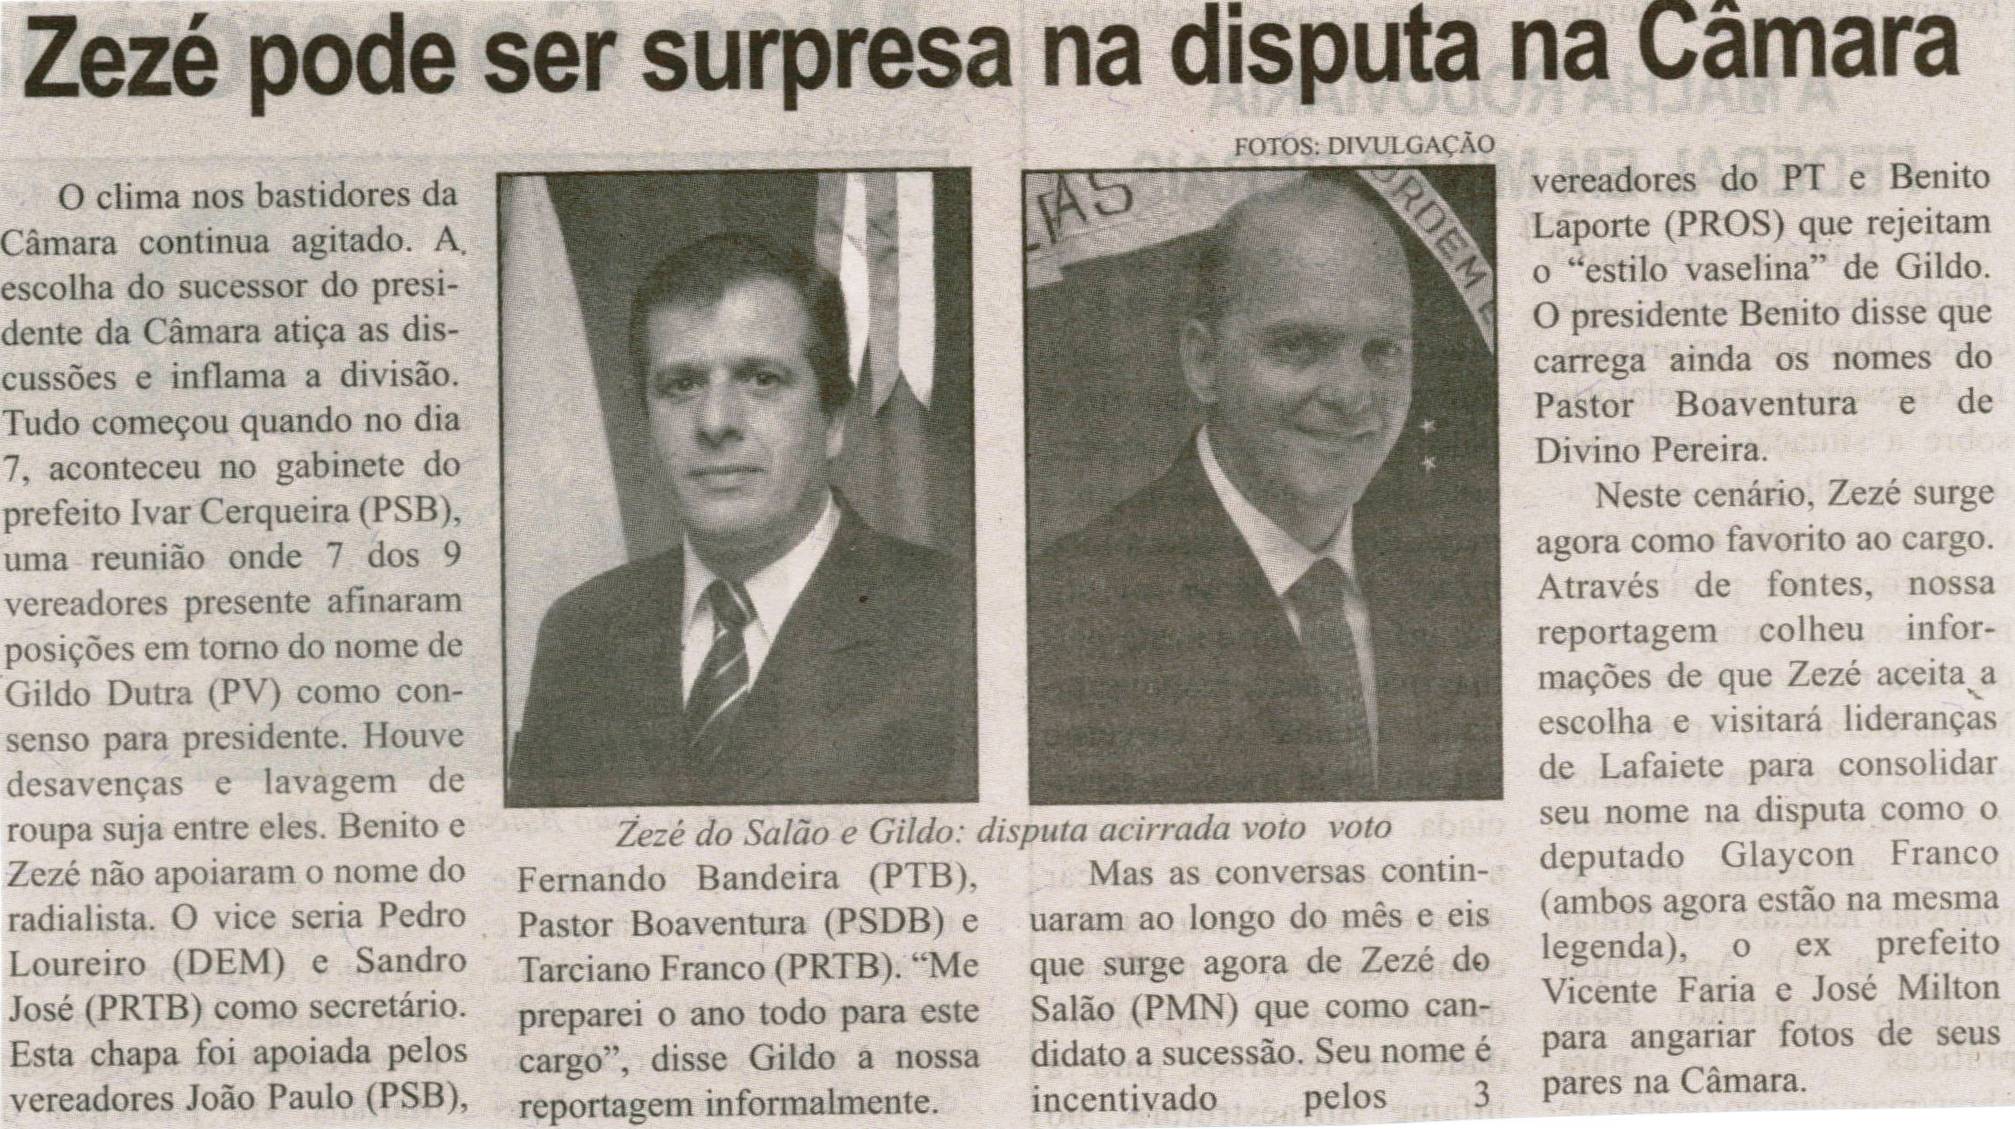 Zezé pode ser surpresa na disputa na Câmara. Correio de Minas, Conselheiro Lafaiete, 26 out. 2013, p. 3.